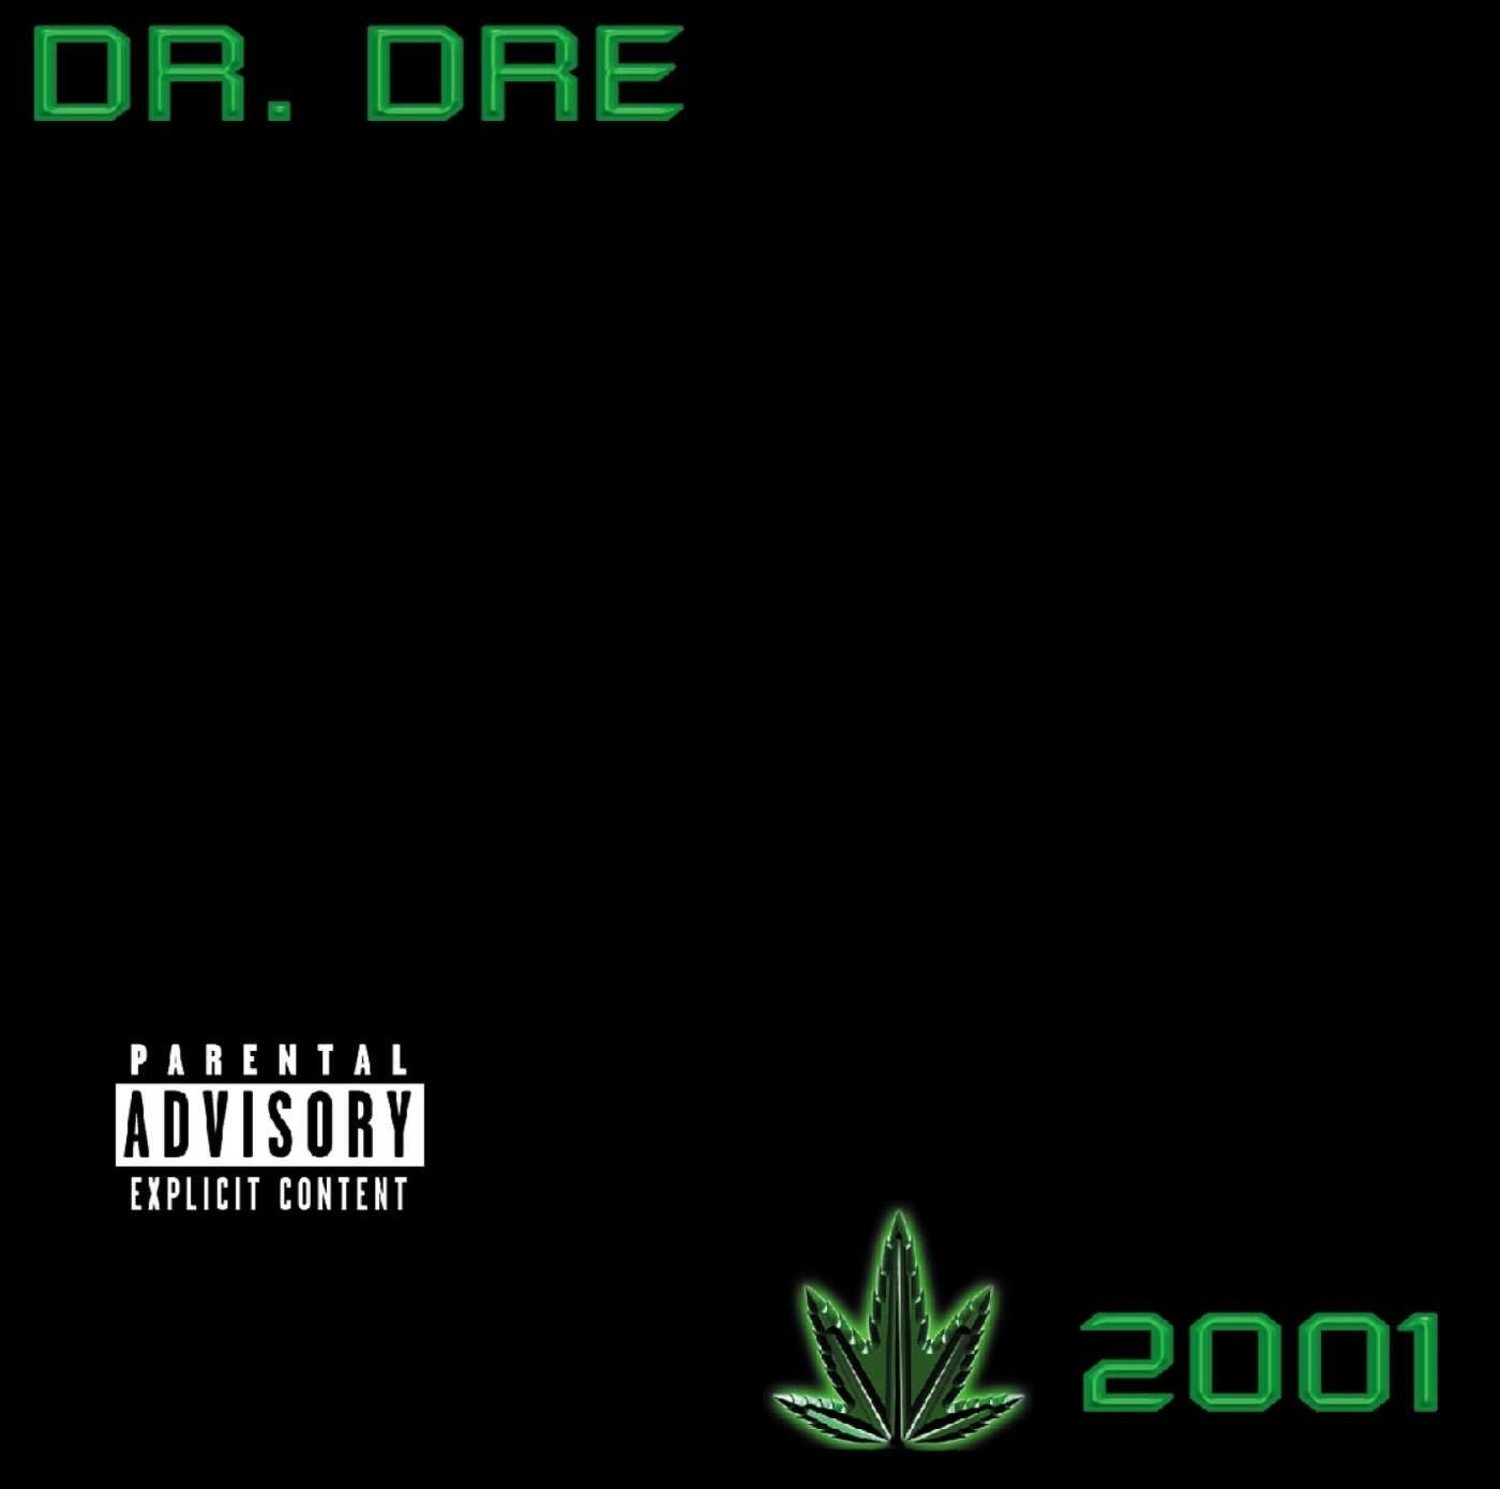 Dr Dre - 2001 LP (Explicit Content) - Wax Trax Records